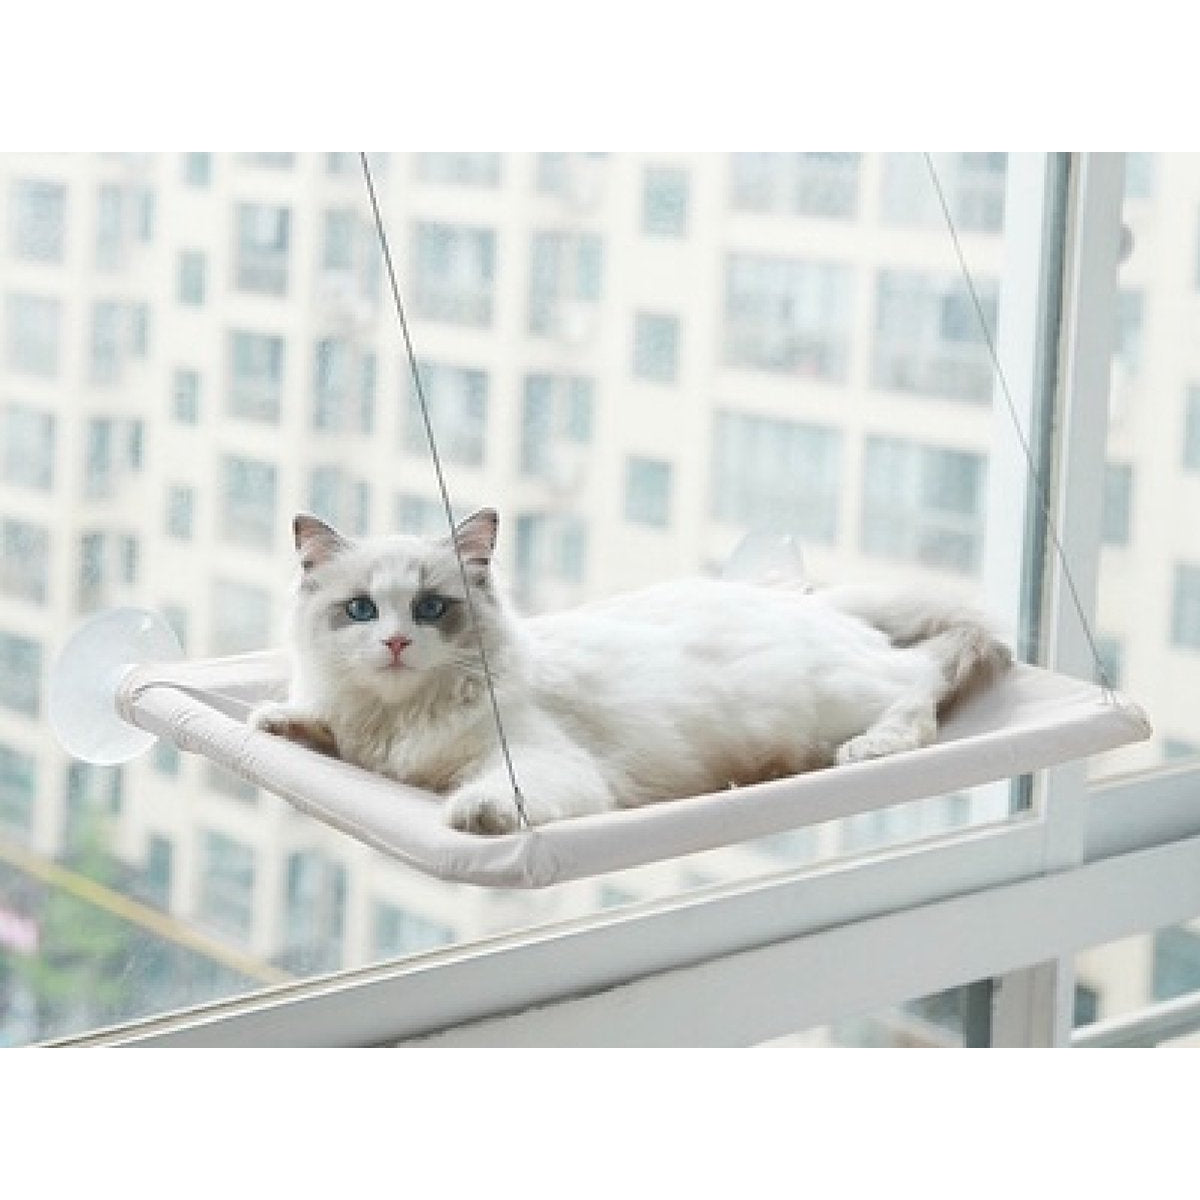 Nixnix - Kattenhangmat - Grijs - Hangmat kat - Katten mand Raam - Kattenbed - Kattenkussen - Ligmat voor het venster - tot 17,5kg - 55 x 35x 2,5 cm - Zomer